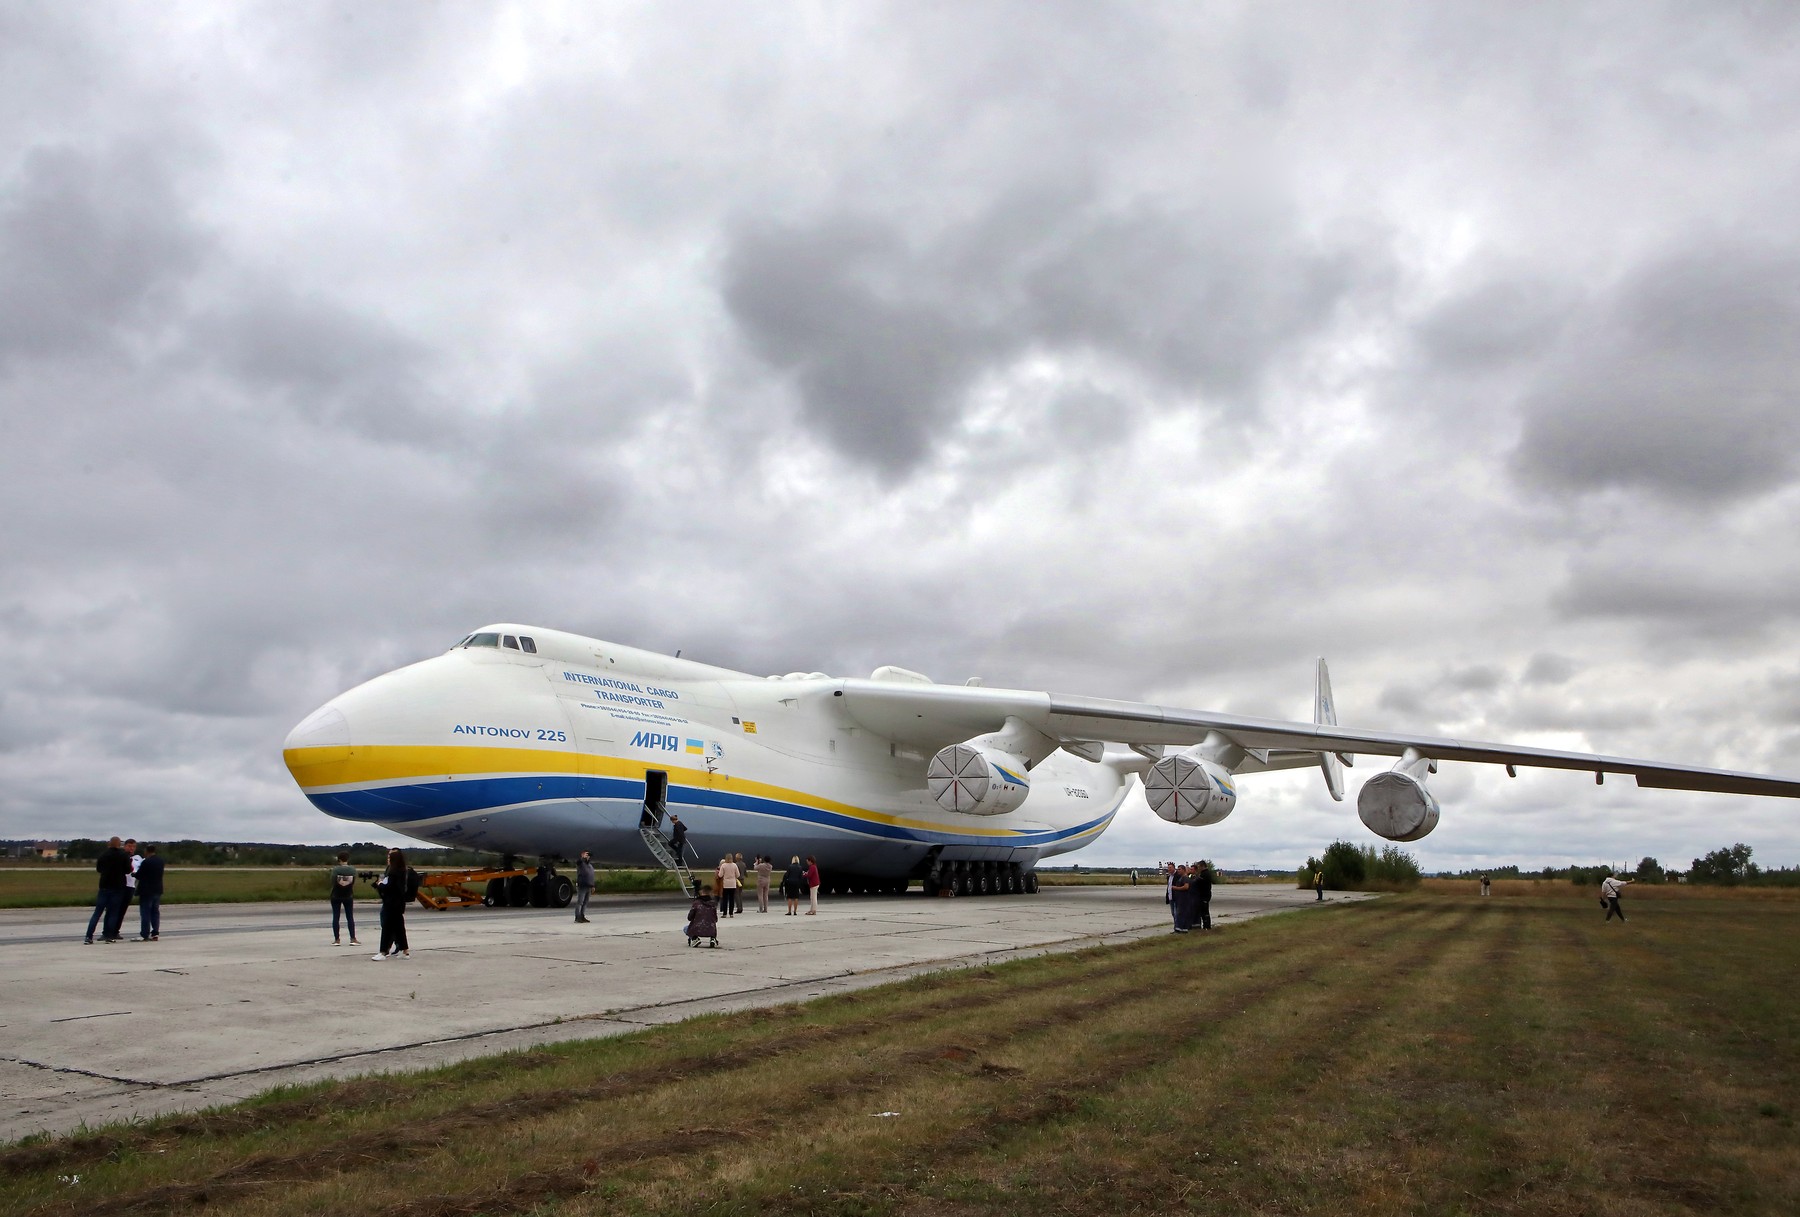 Antonov 225, cel mai mare avion lume, a fost distrus în urma unor bombardamente de lângă Kiev - HotNews.ro